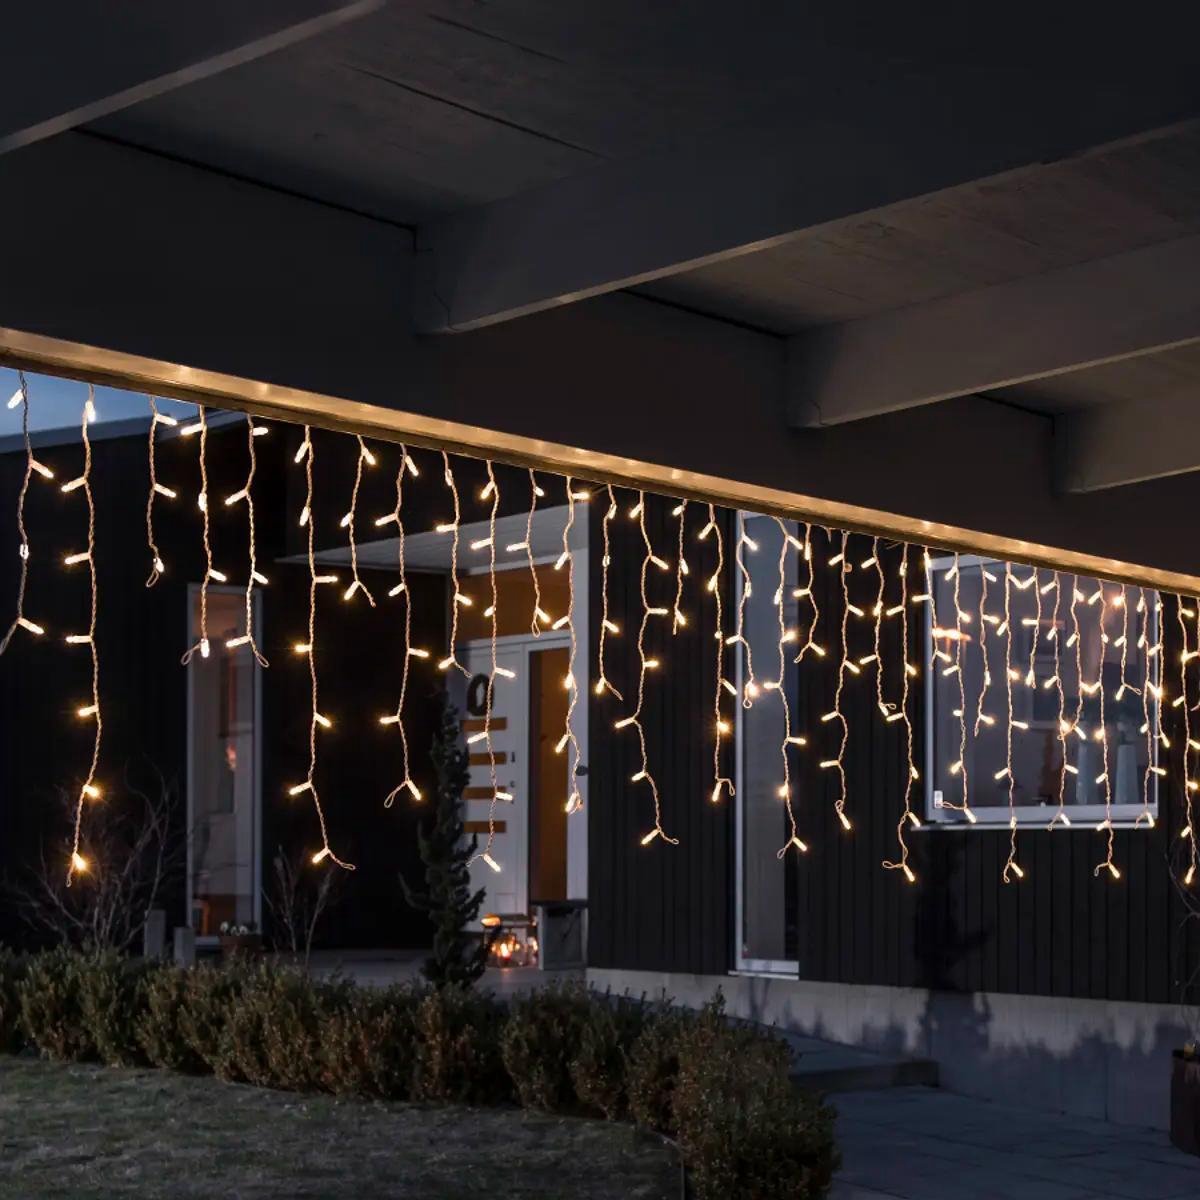 WDMT™ LED gordijn - ijspegel verlichting | 360 LED lampjes / Kerstverlichting gordijn voor binnen en buiten | 7 + 5 meter snoer | Warm-wit - WDMT